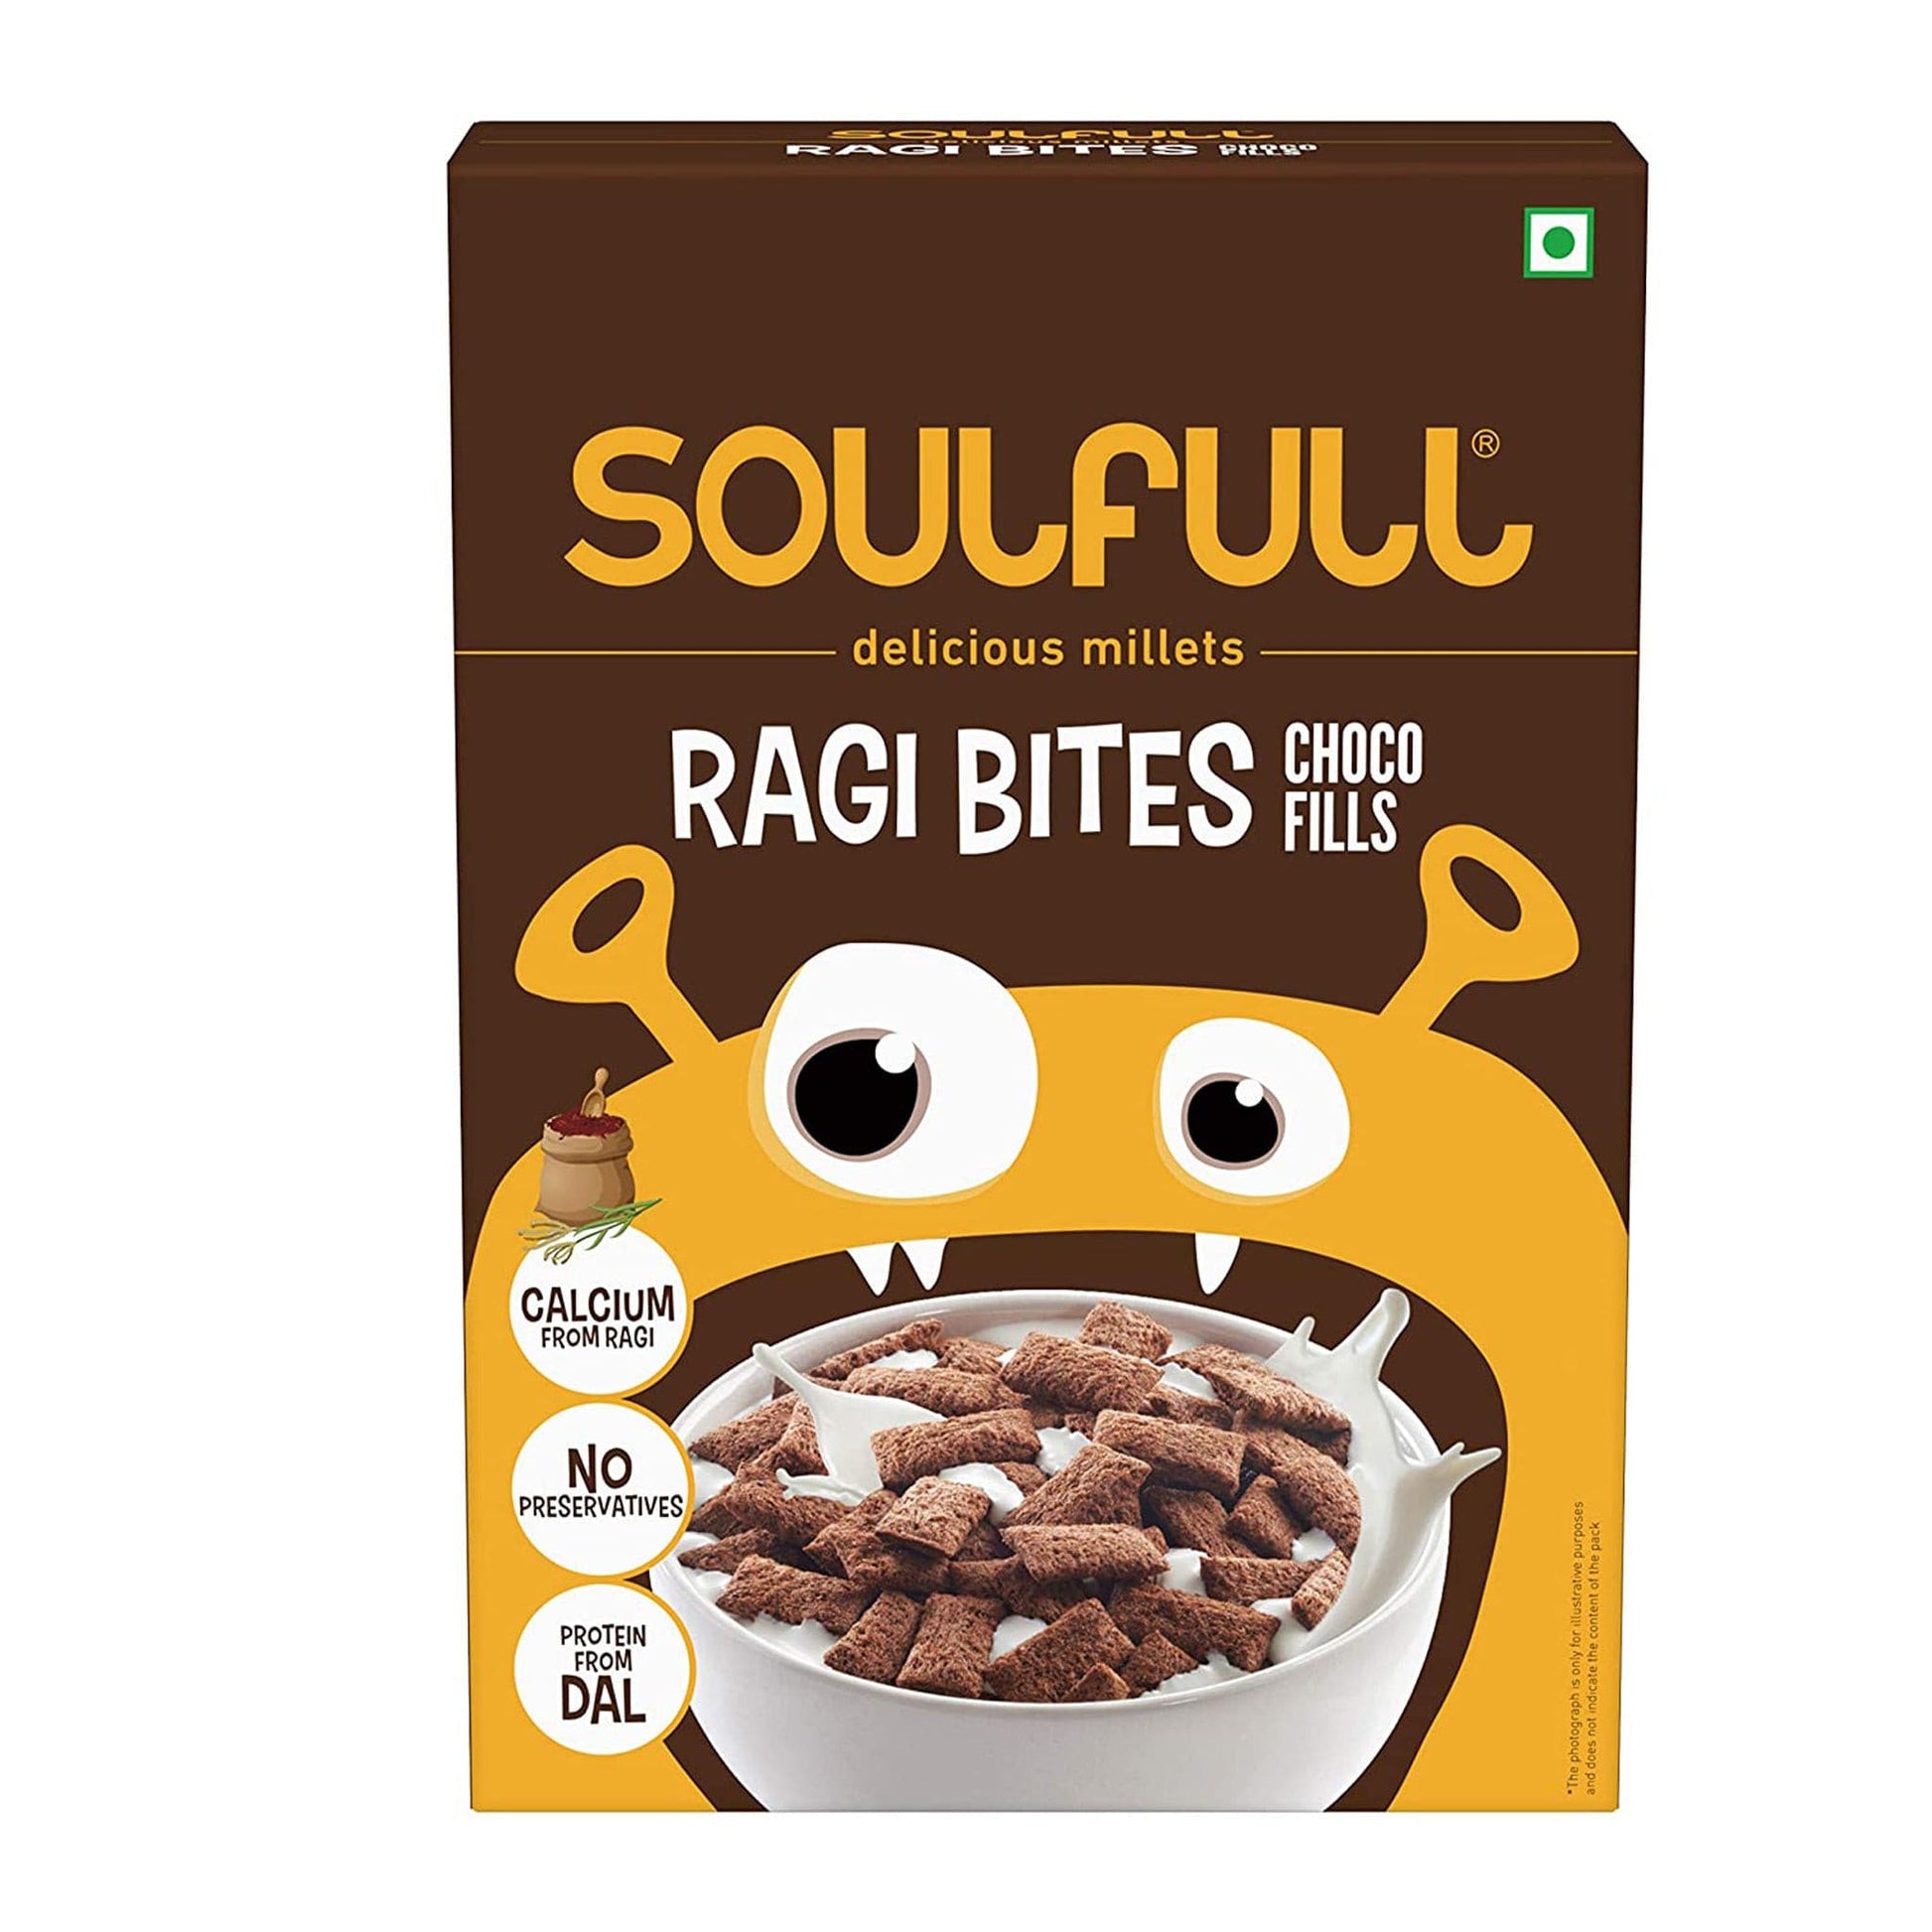 Soulfull Choco Fills - Ragi Bites